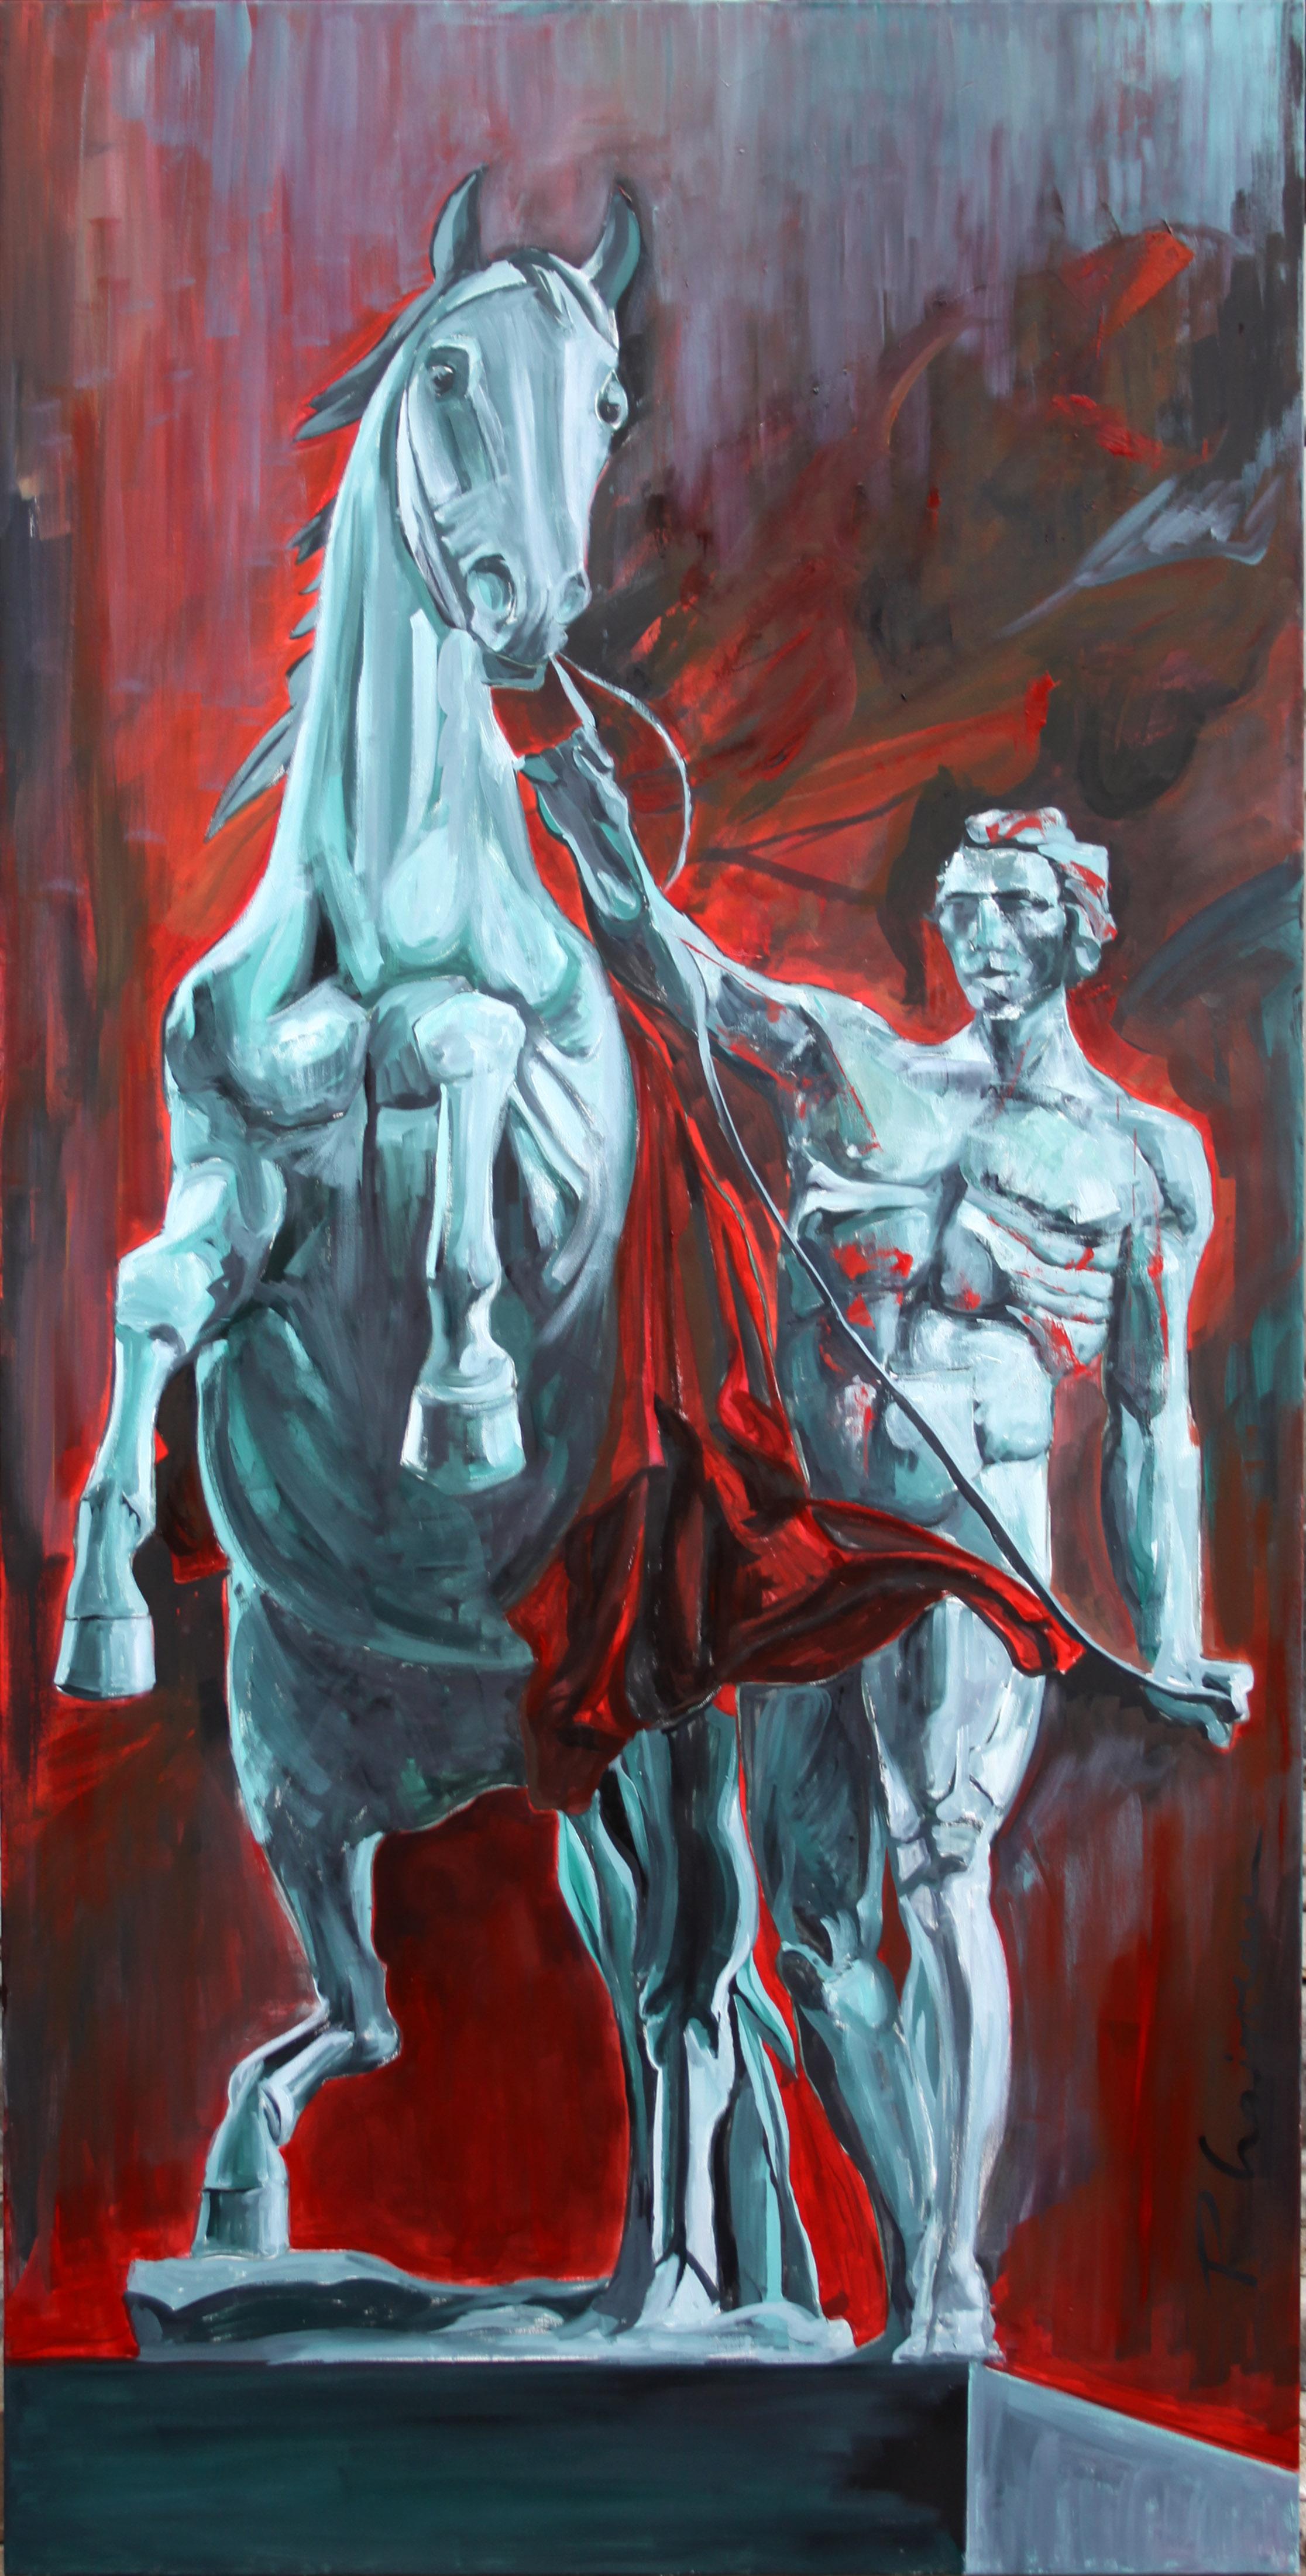 The Horse Tamer - original painting by Paula Craioveanu - Neo Mythology Hero